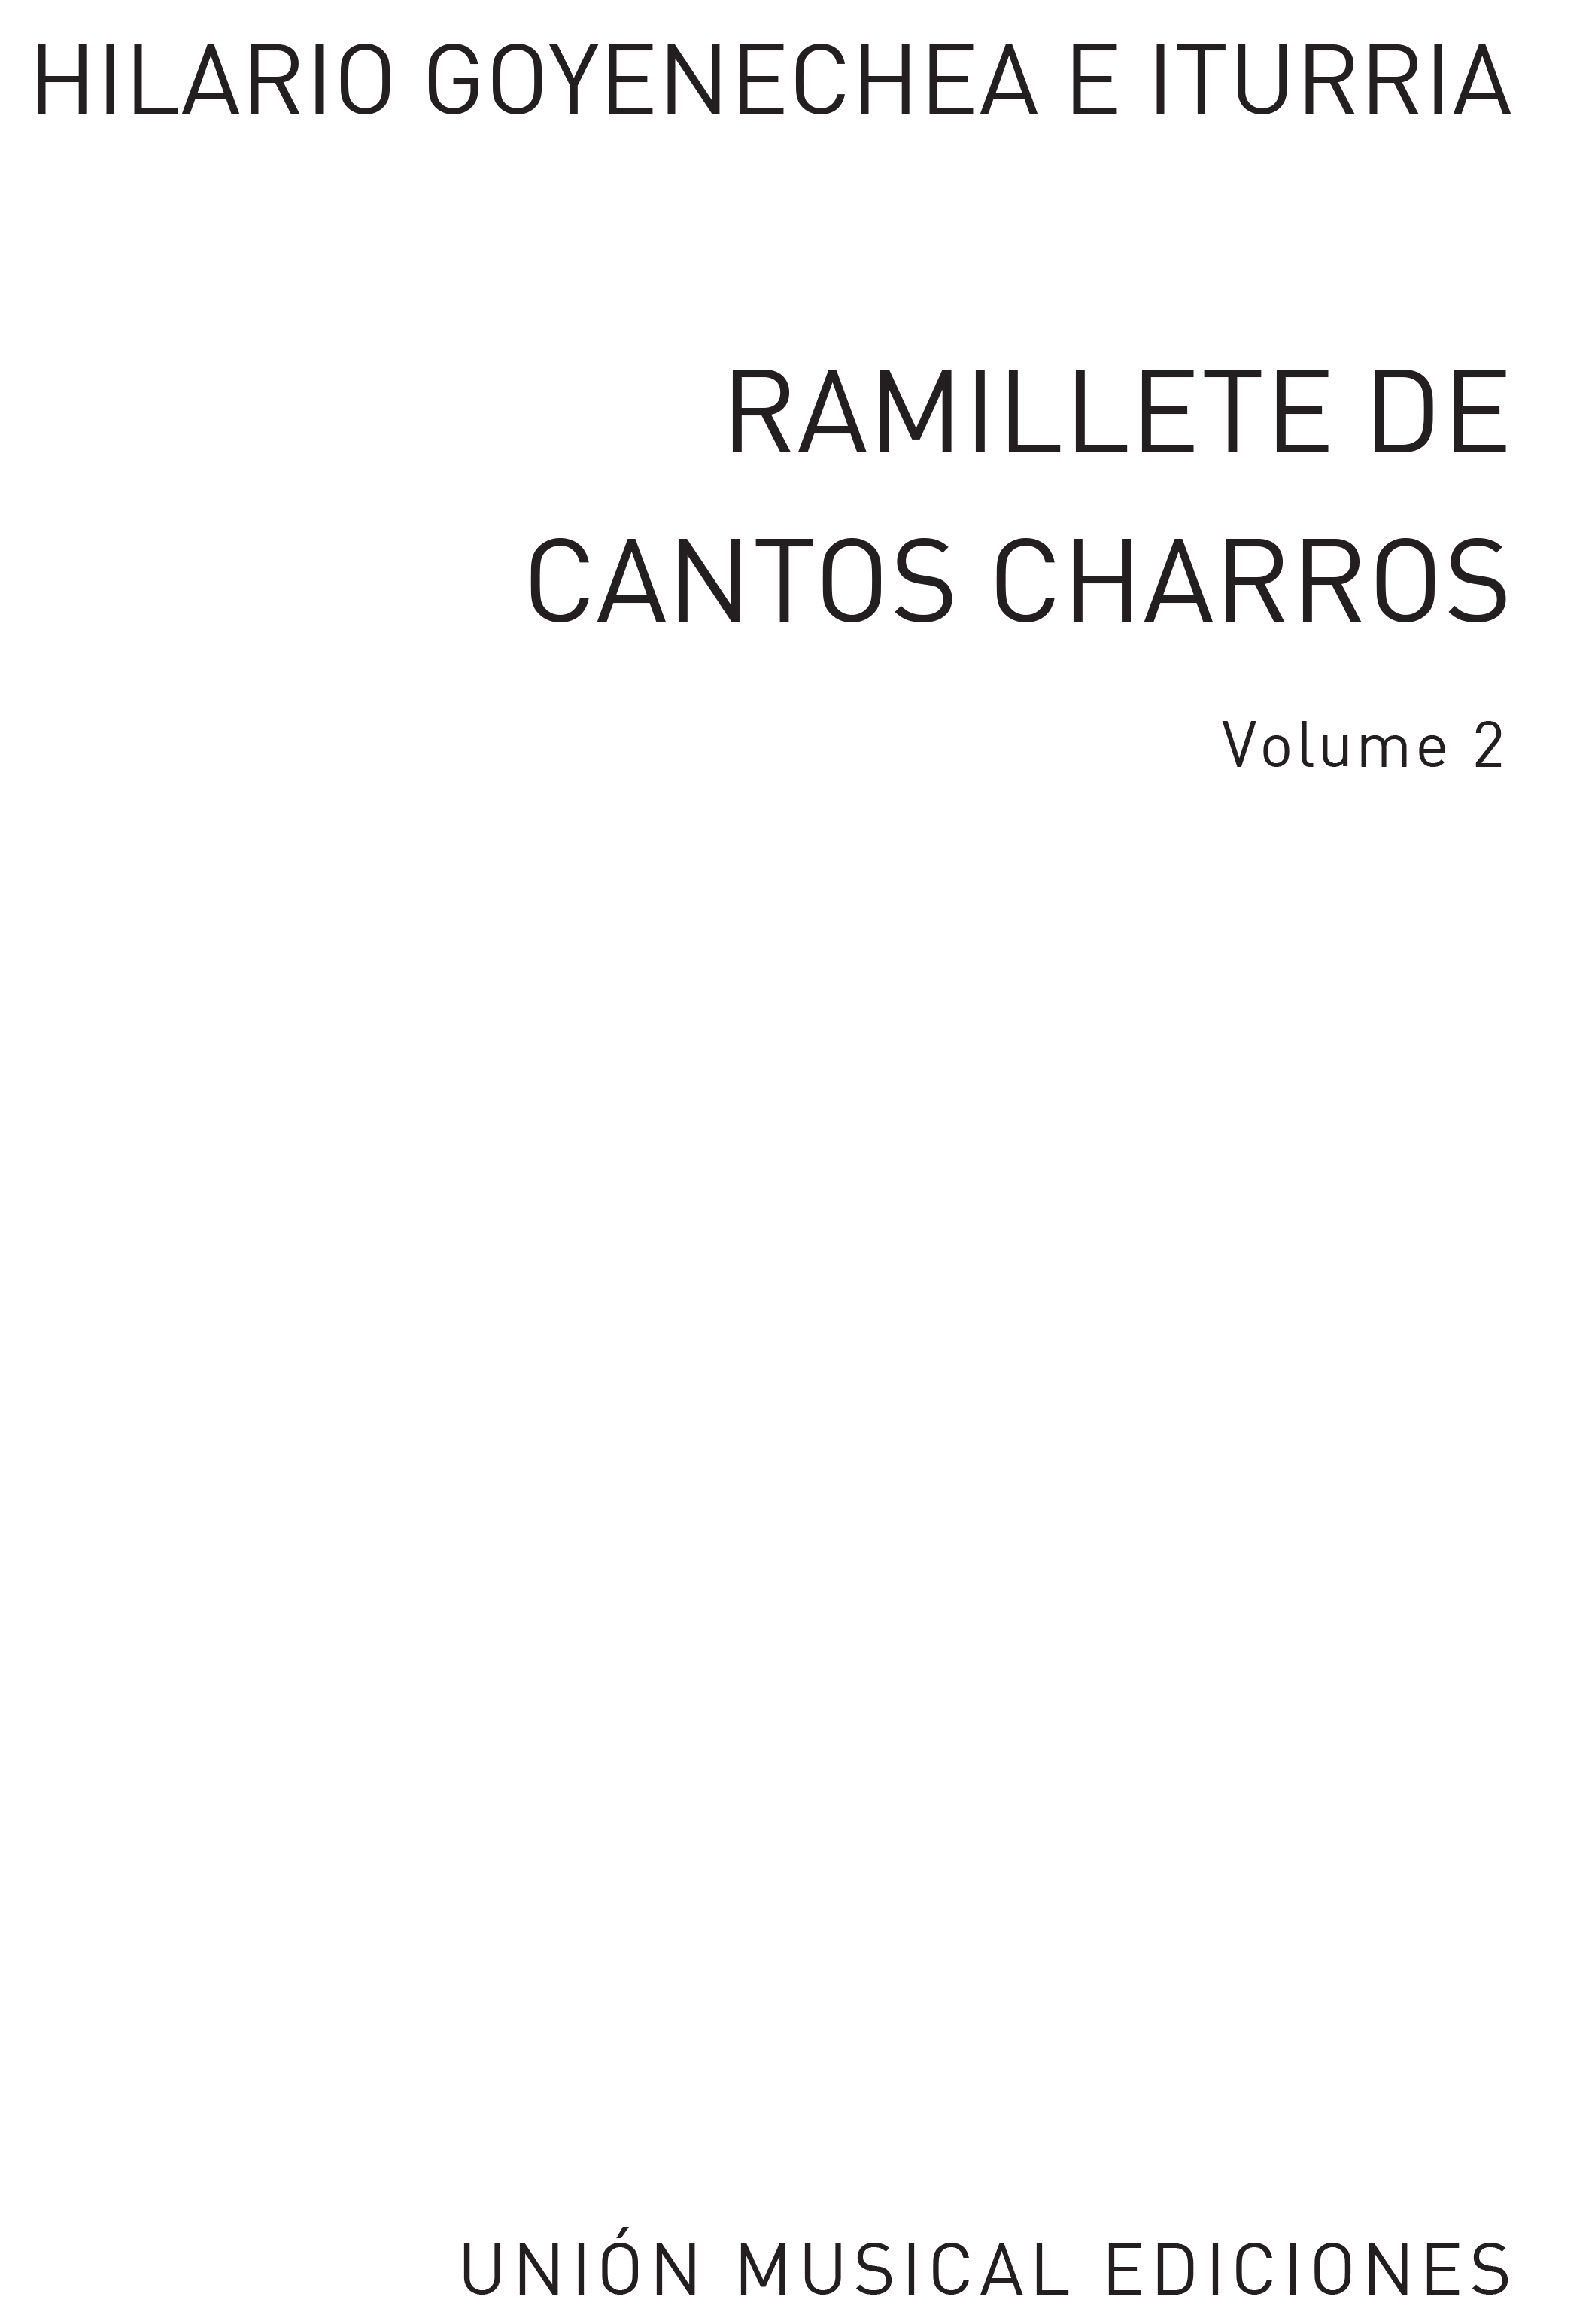 Hilario Goyonechea: Ramillete Cantos Charros Volume II: Mixed Choir: